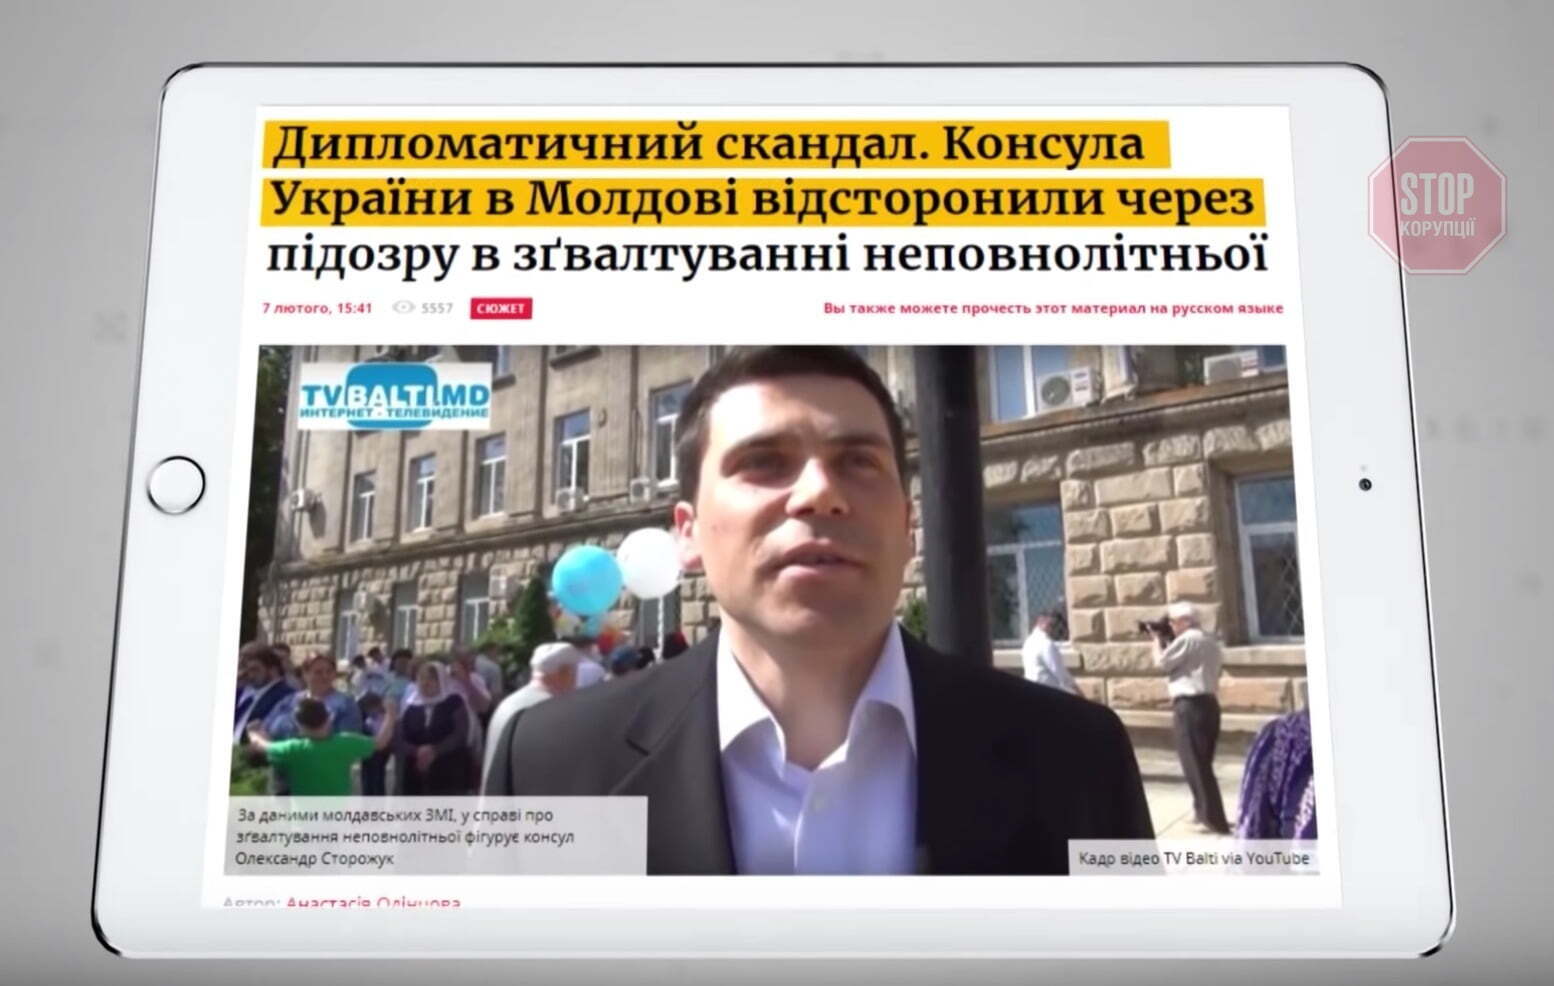  Українського консула у Молдові підозрюють у скоєнні важкого злочину